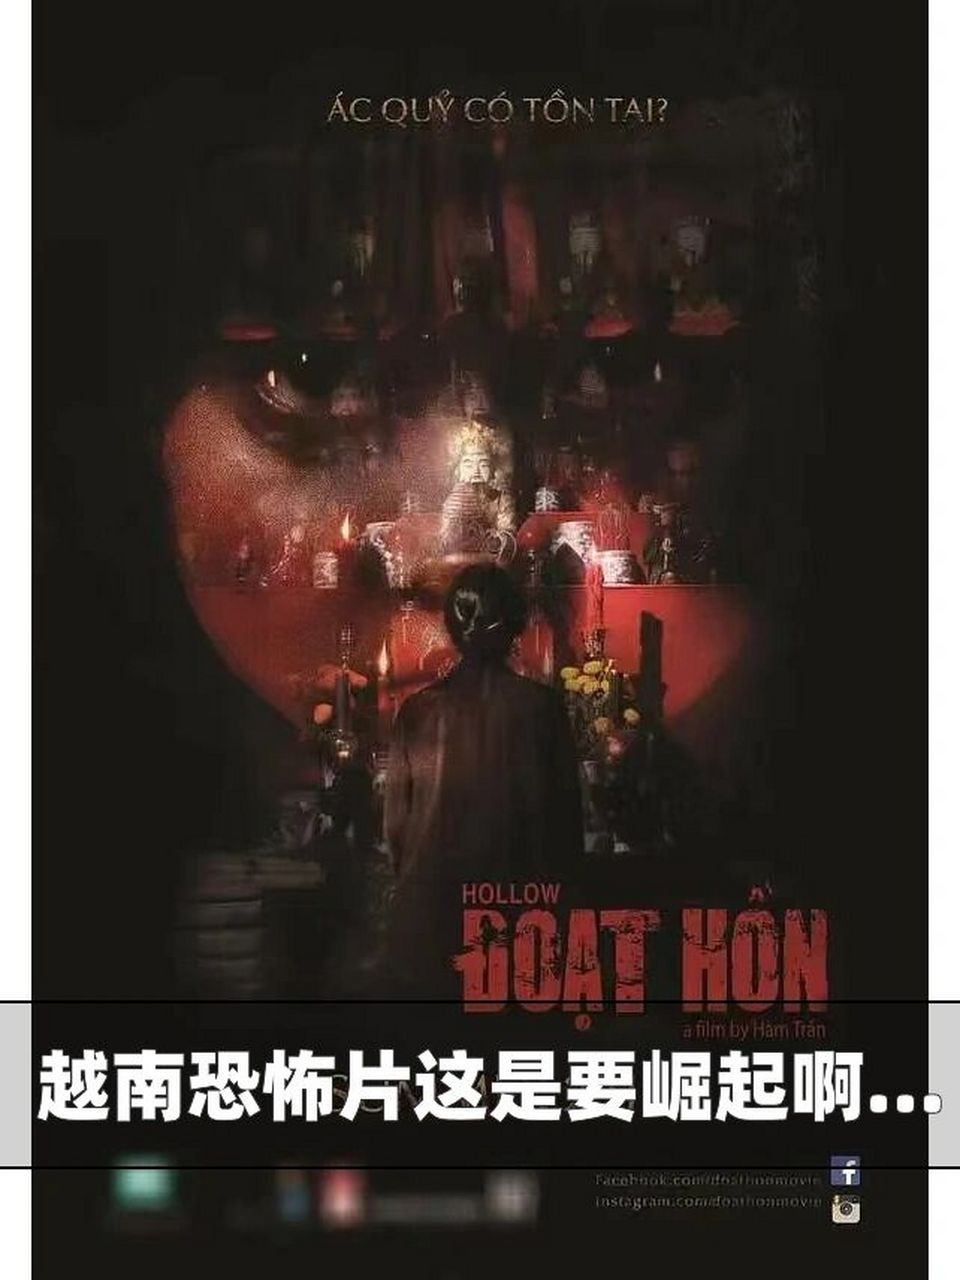 93恐怖电影推荐《夺魂》 越南9799口碑恐怖惊悚片 各种连环附身